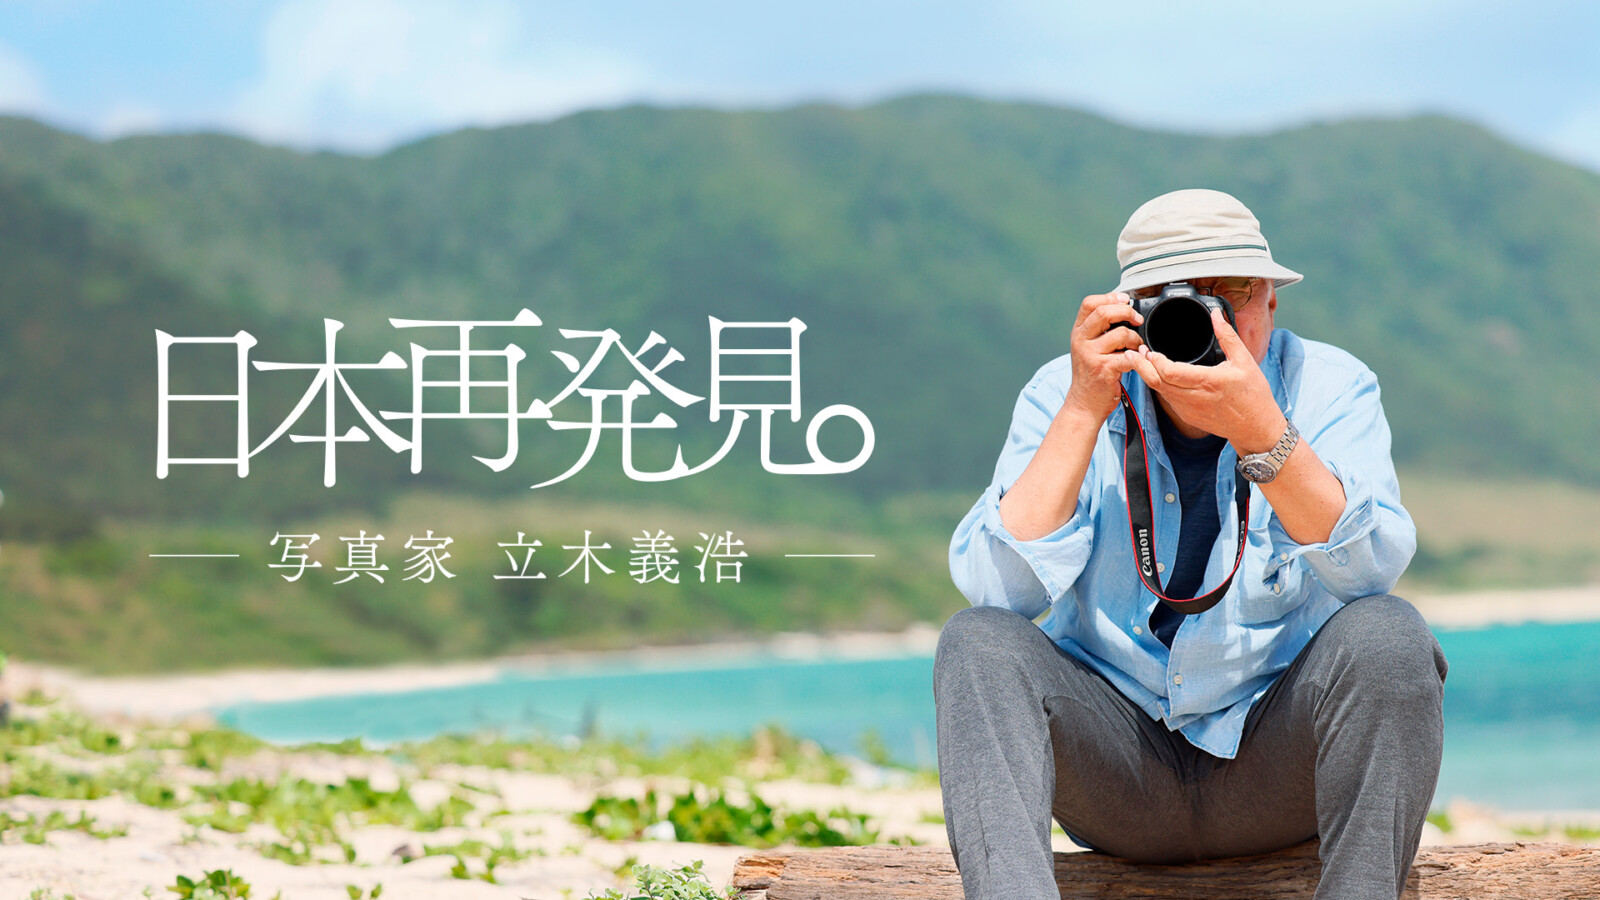 立木義浩,写真家,日本再発見プロジェクト